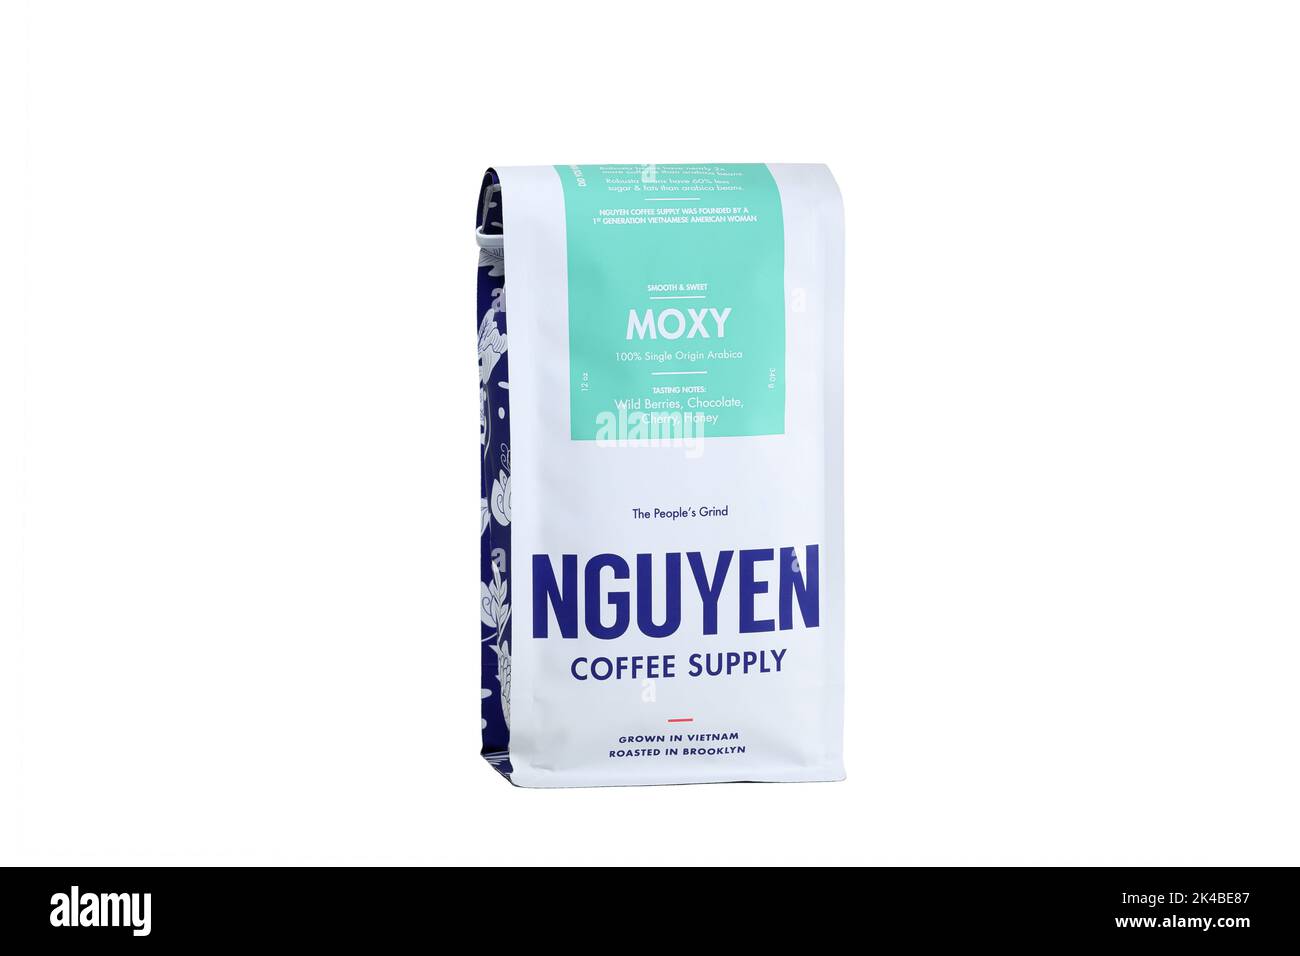 Un sac de café vietnamien 'Moxy' Nguyen Coffee Supply isolé sur fond blanc. Image découpée pour illustration et usage éditorial. Banque D'Images